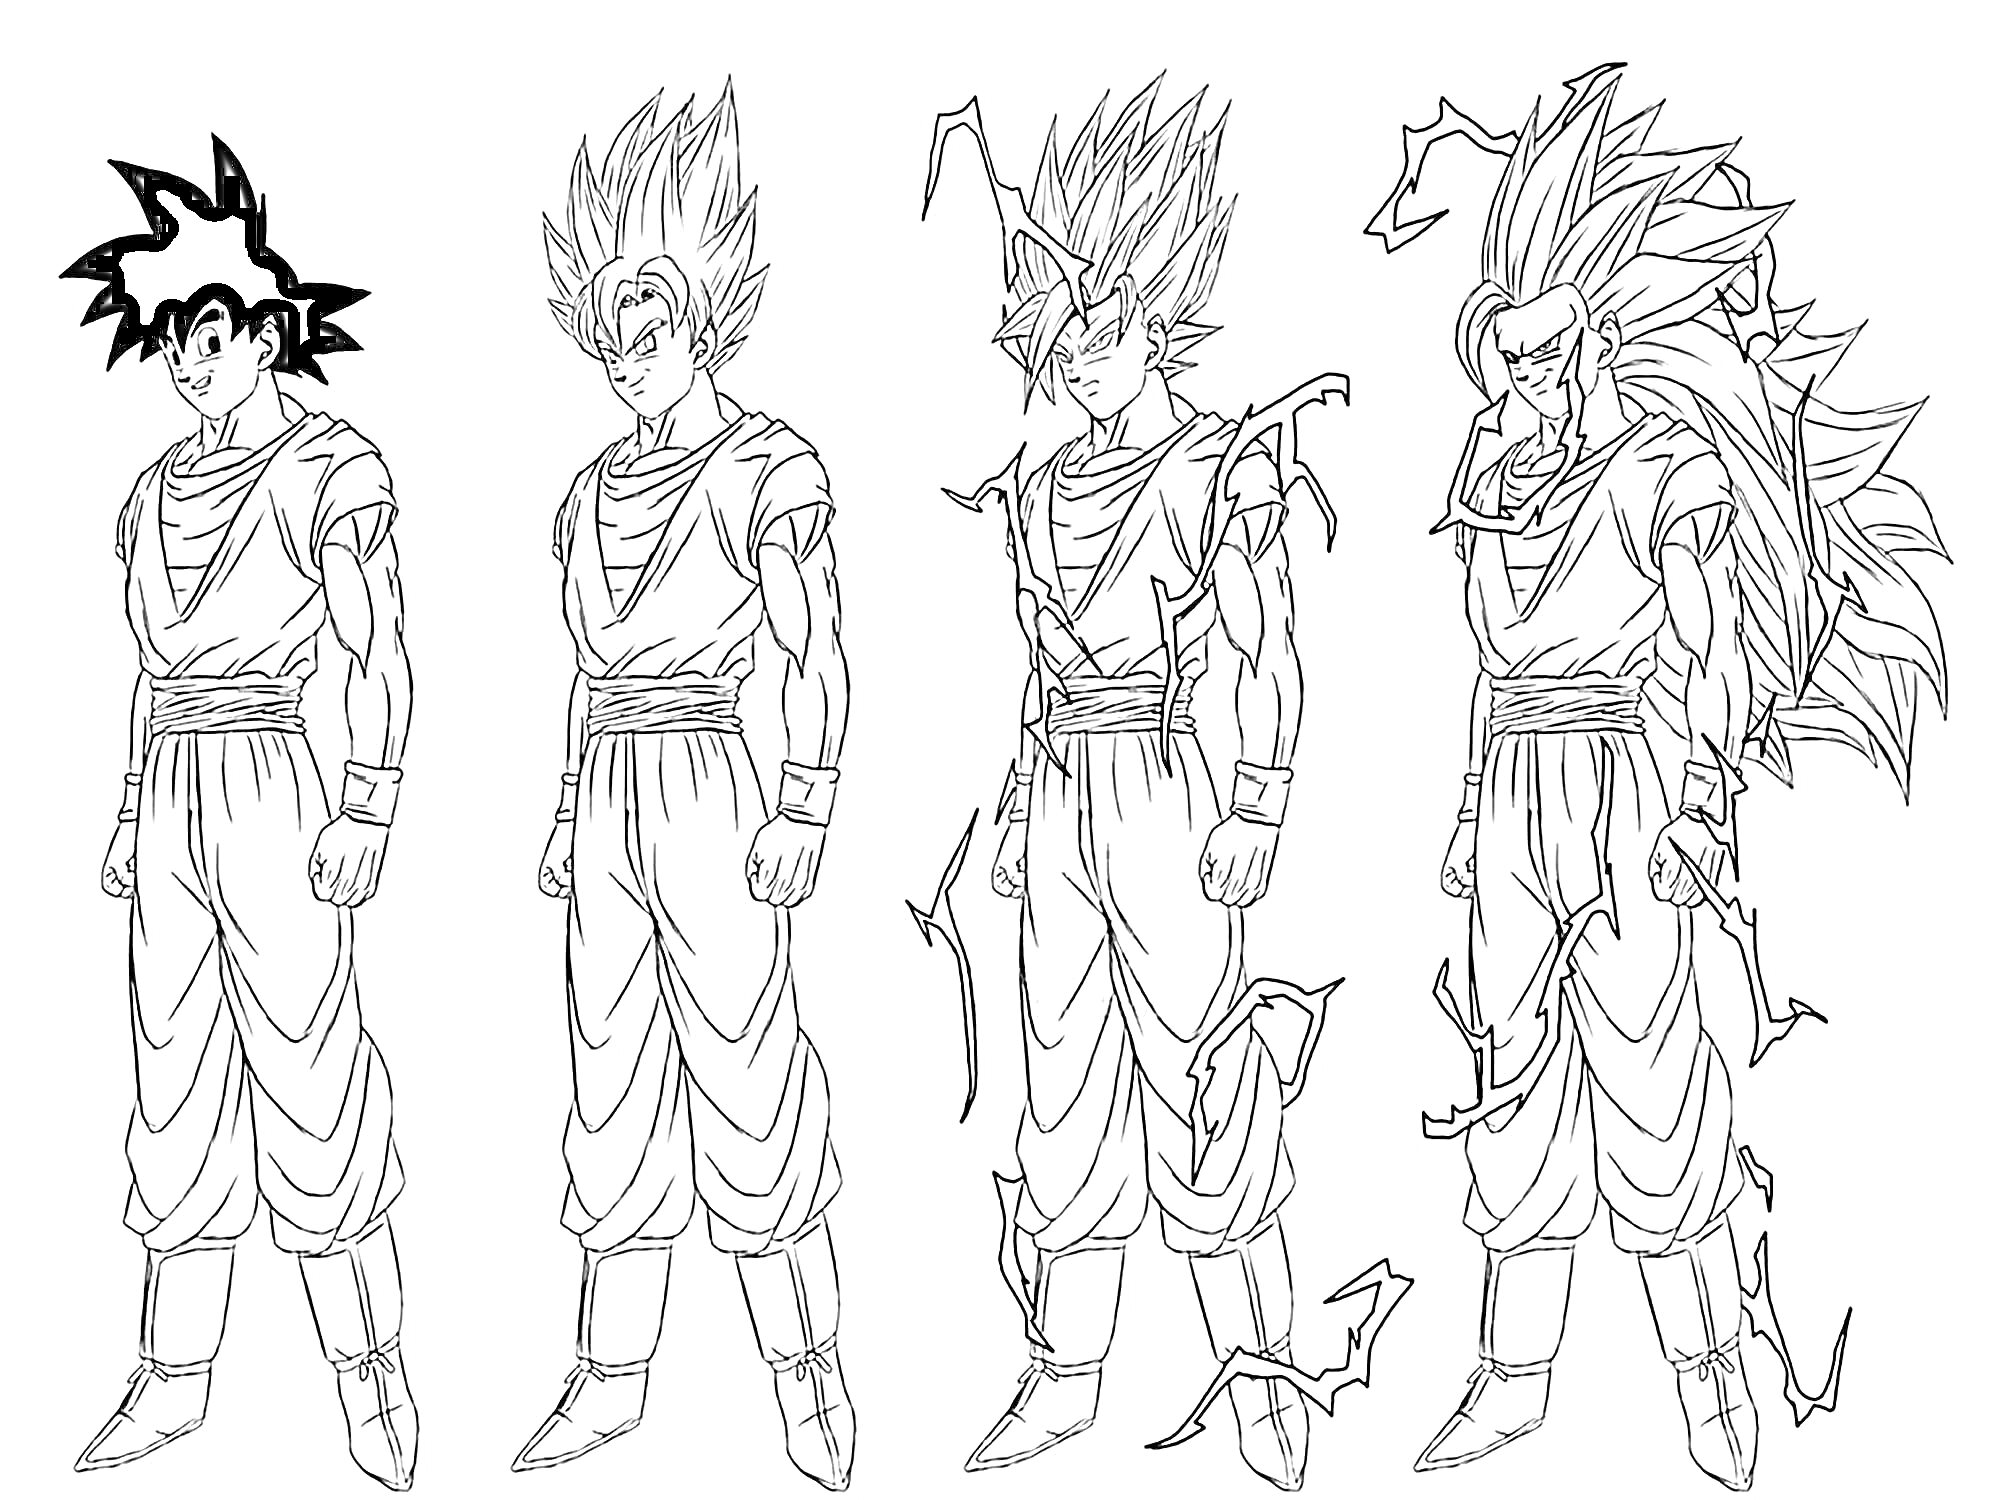 Раскраска Эволюция персонажа Сон Гоку в четырех формах: обычная форма, Супер Сайян, Супер Сайян 3, Супер Сайян 4